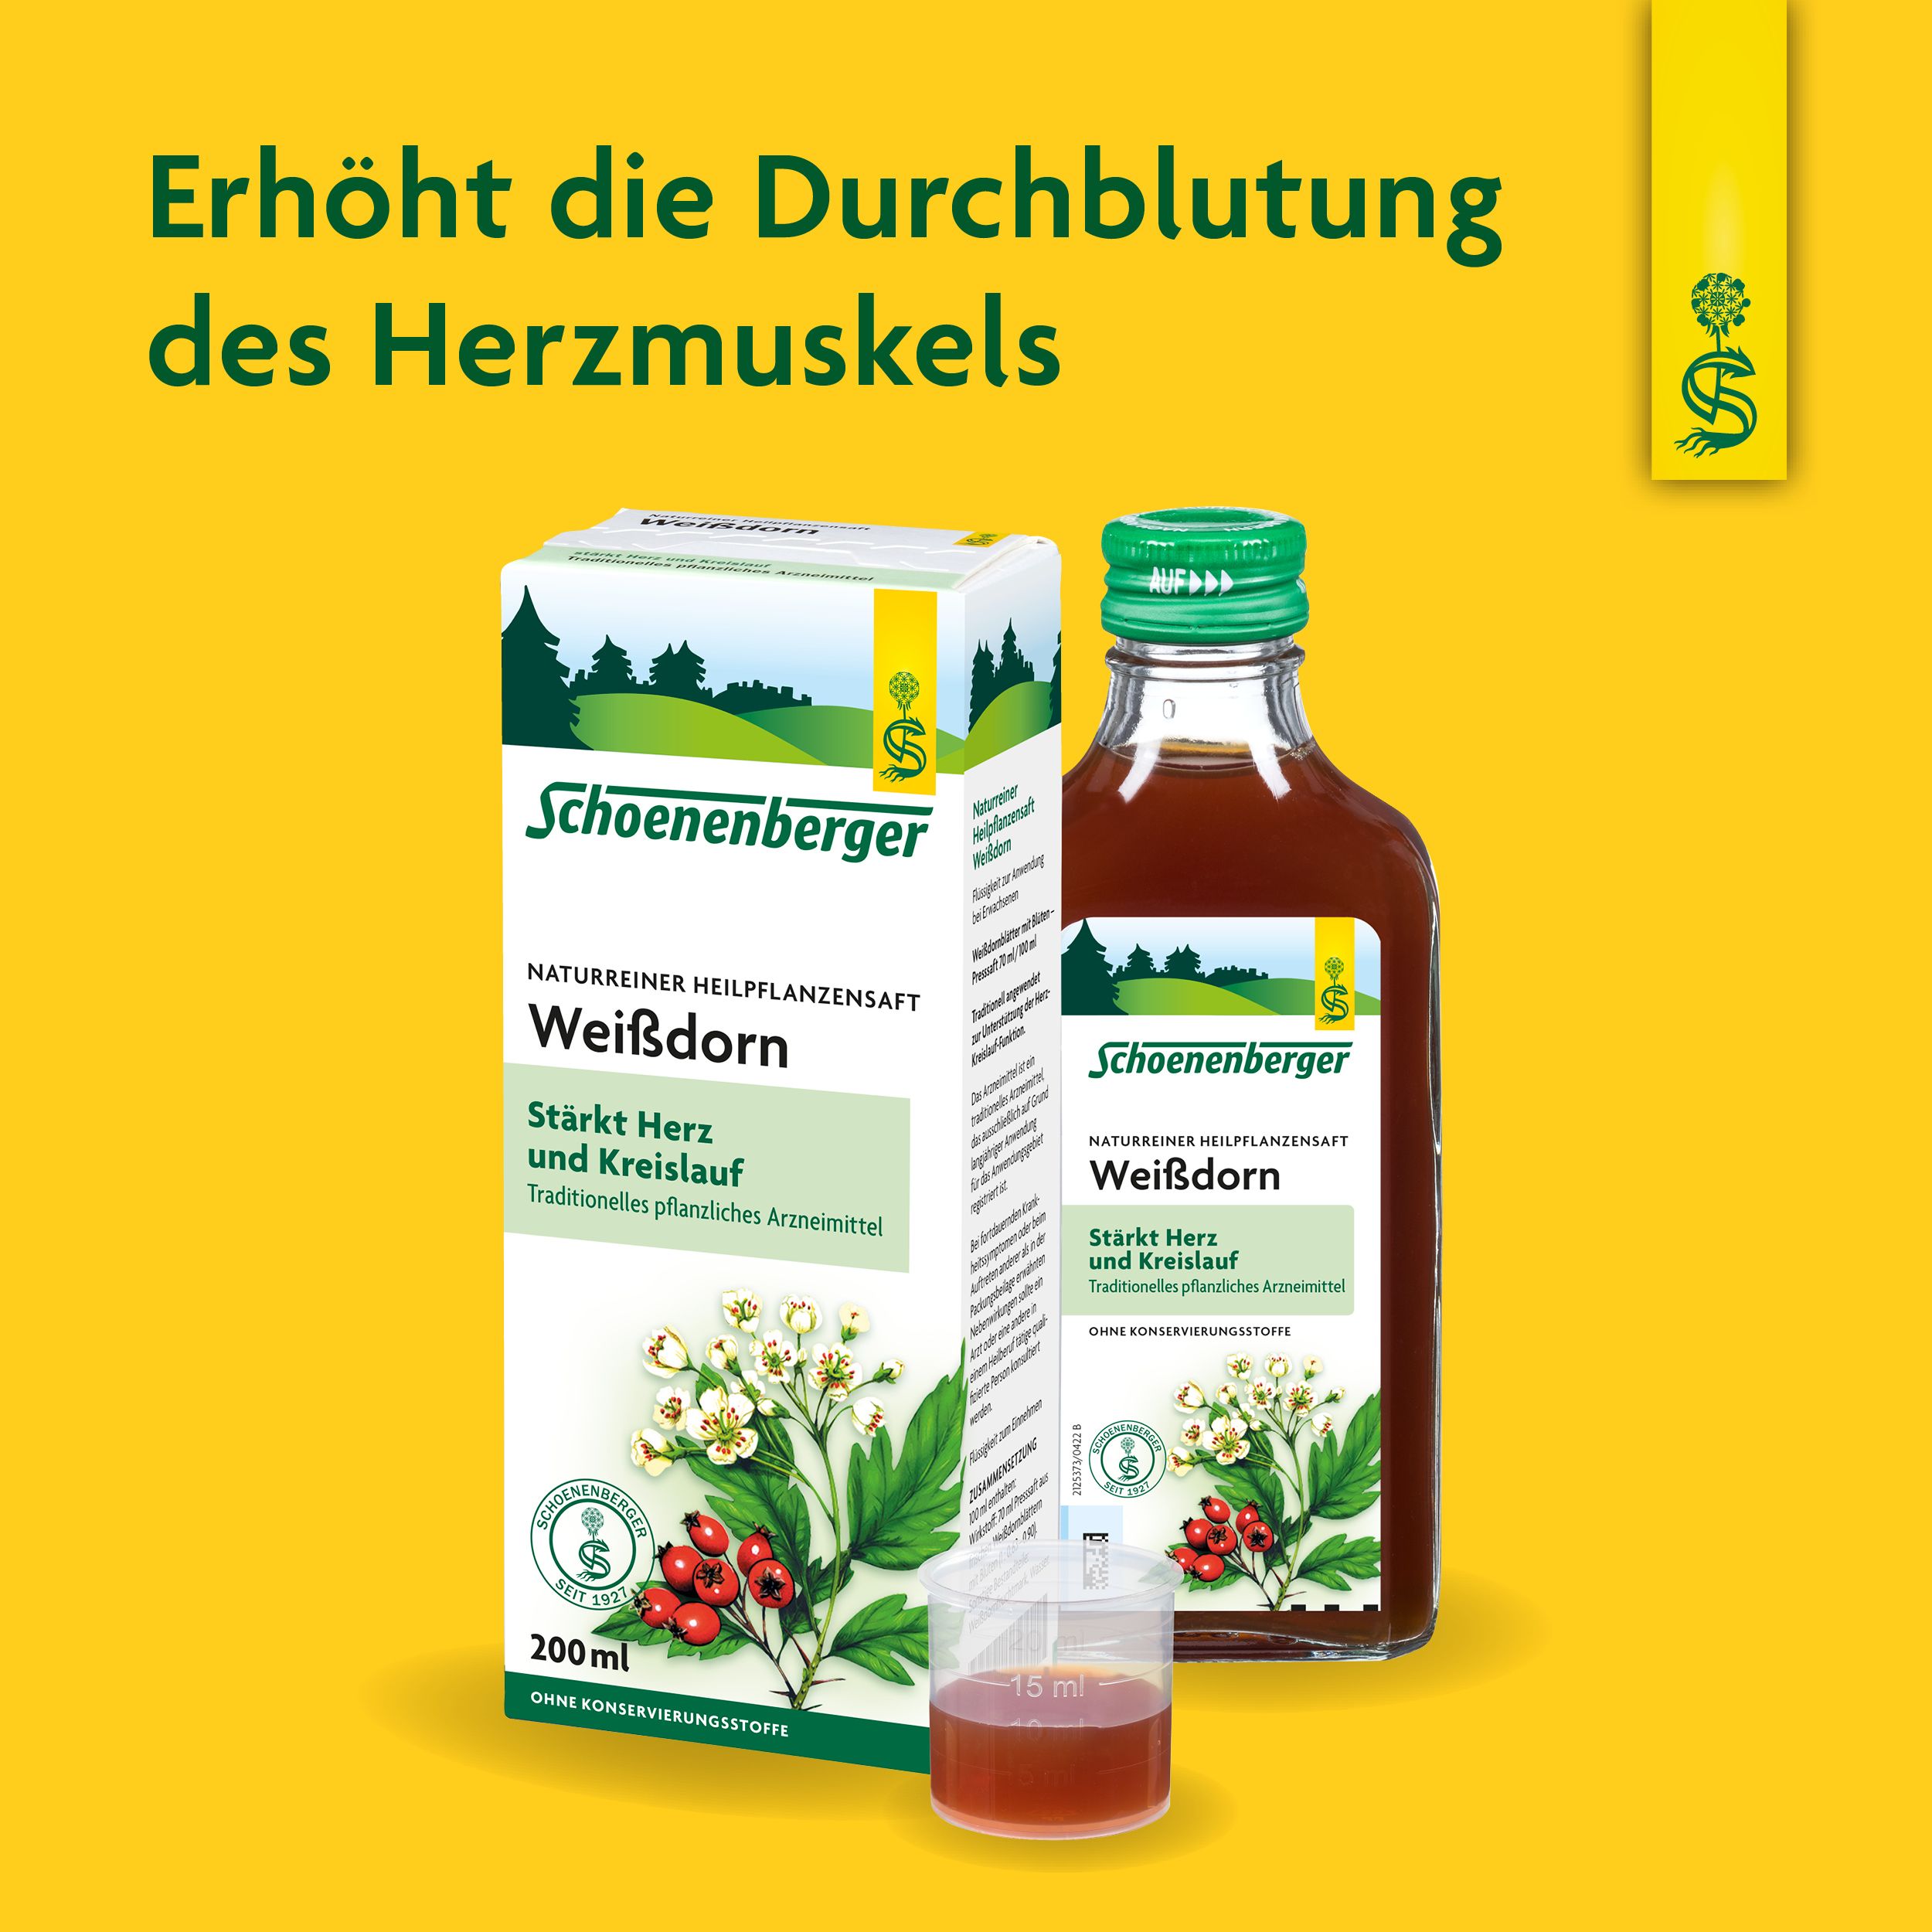 Schoenenberger® naturreiner Heilpflanzensaft Weißdorn